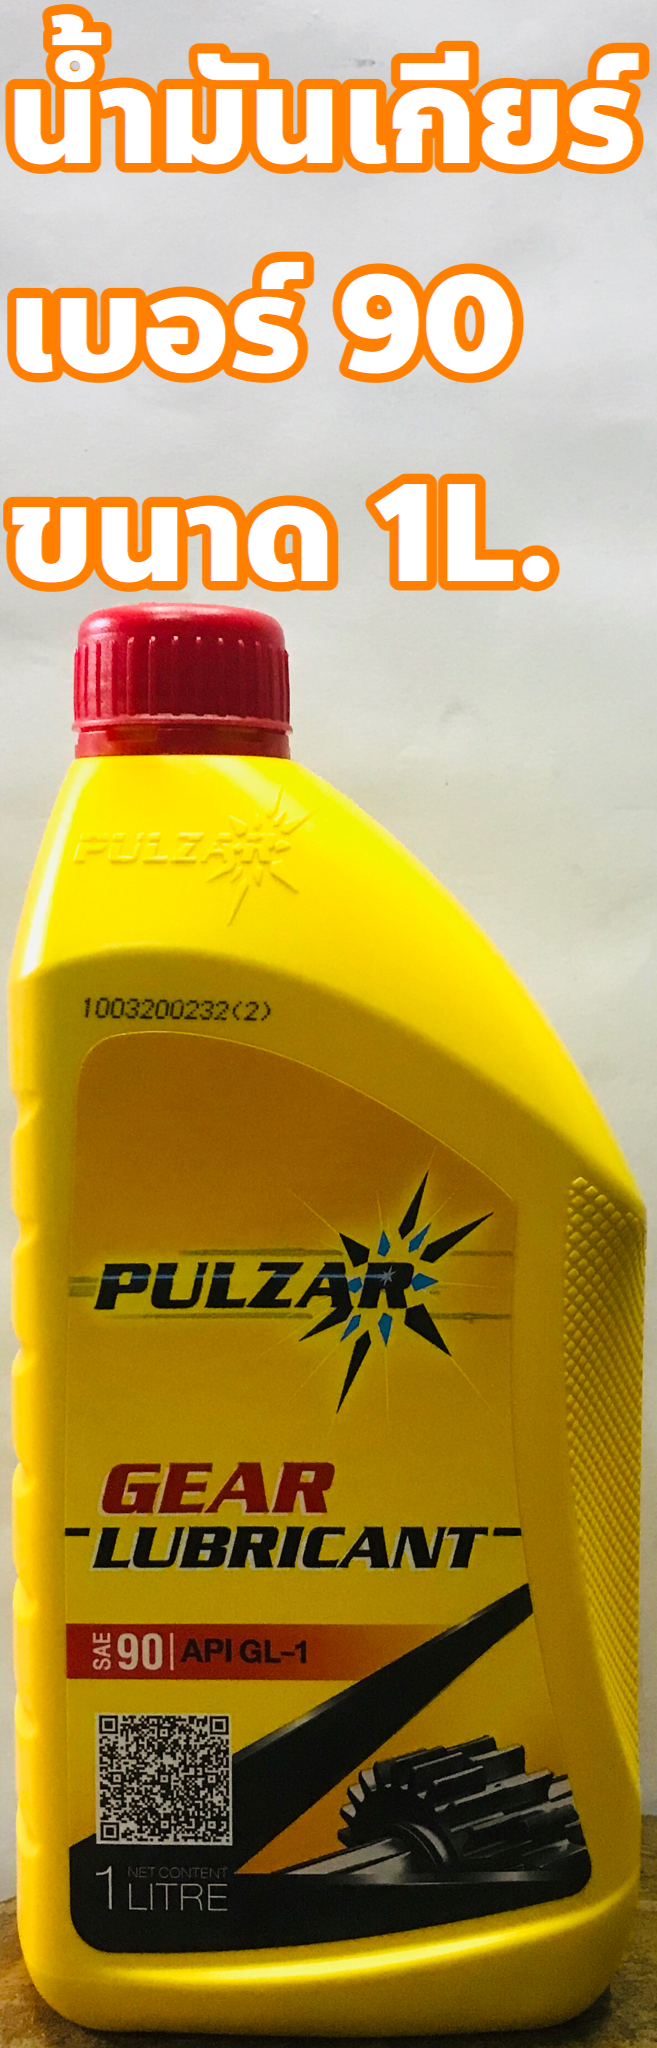 น้ำมันเกียร์ Pulzar เบอร์ 90 ขนาด 1ลิตร